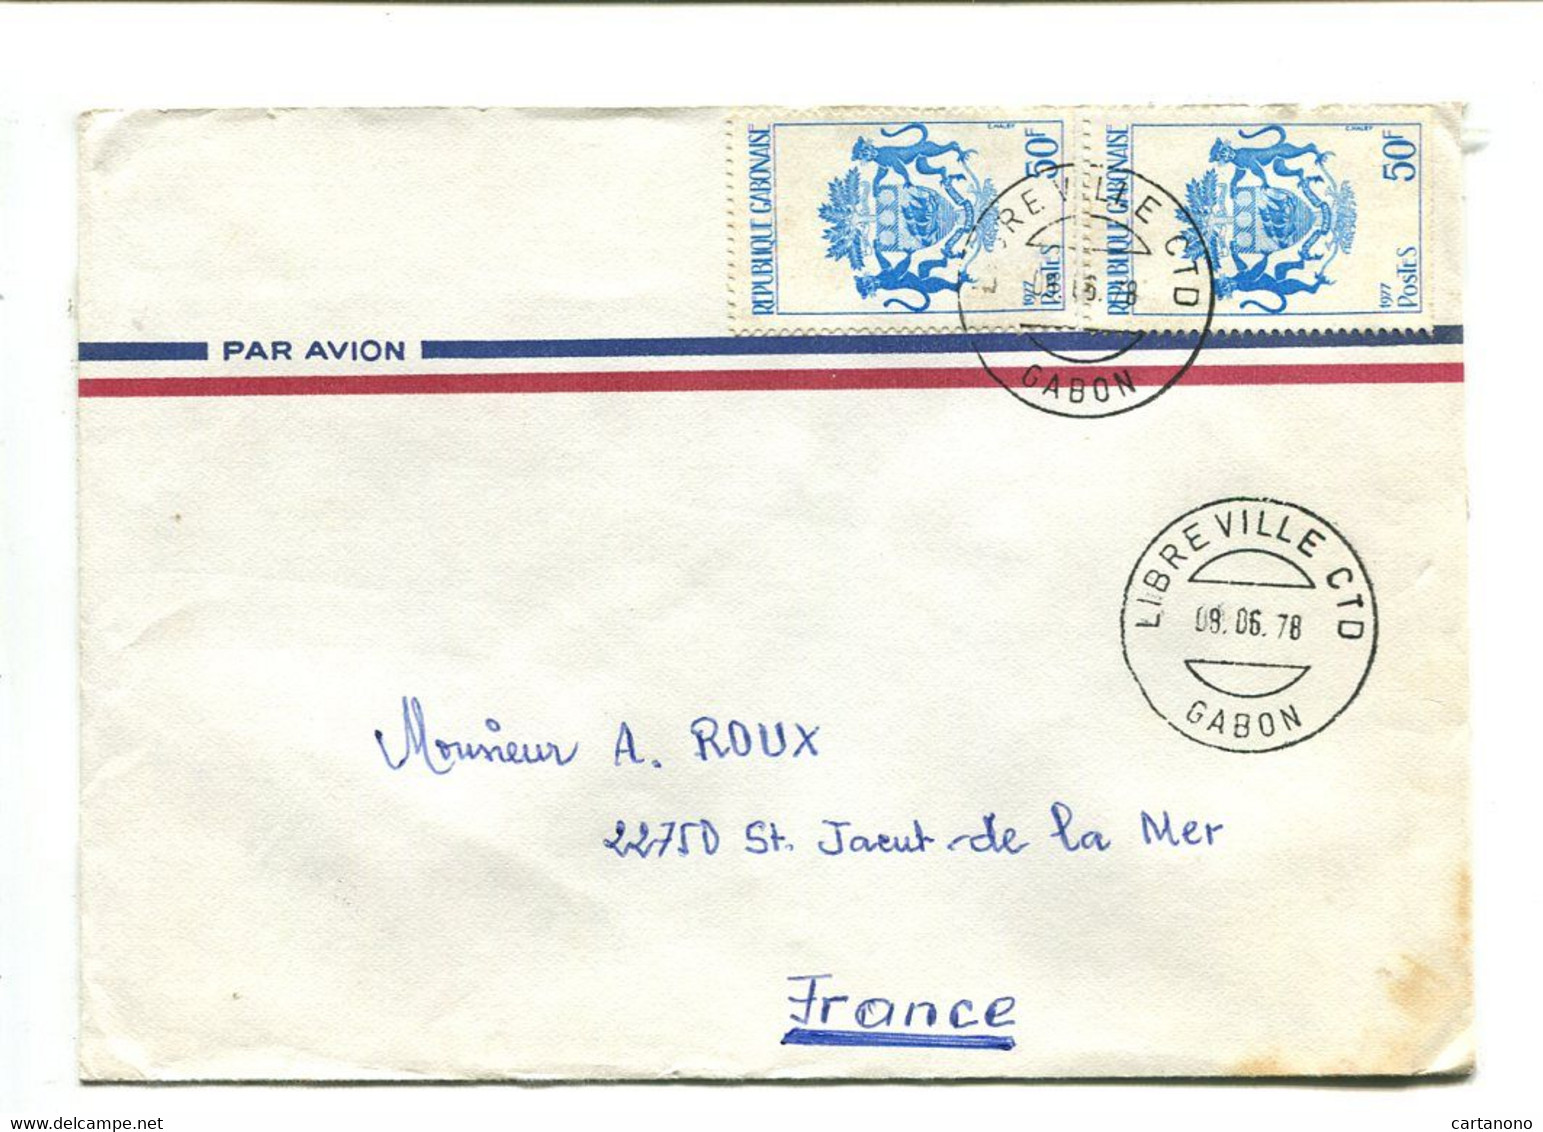 GABON Libreville CTD 1978 - Affranchissement Multiple Sur Lettre Par Avion - Héraldisme Blason - Gabon (1960-...)